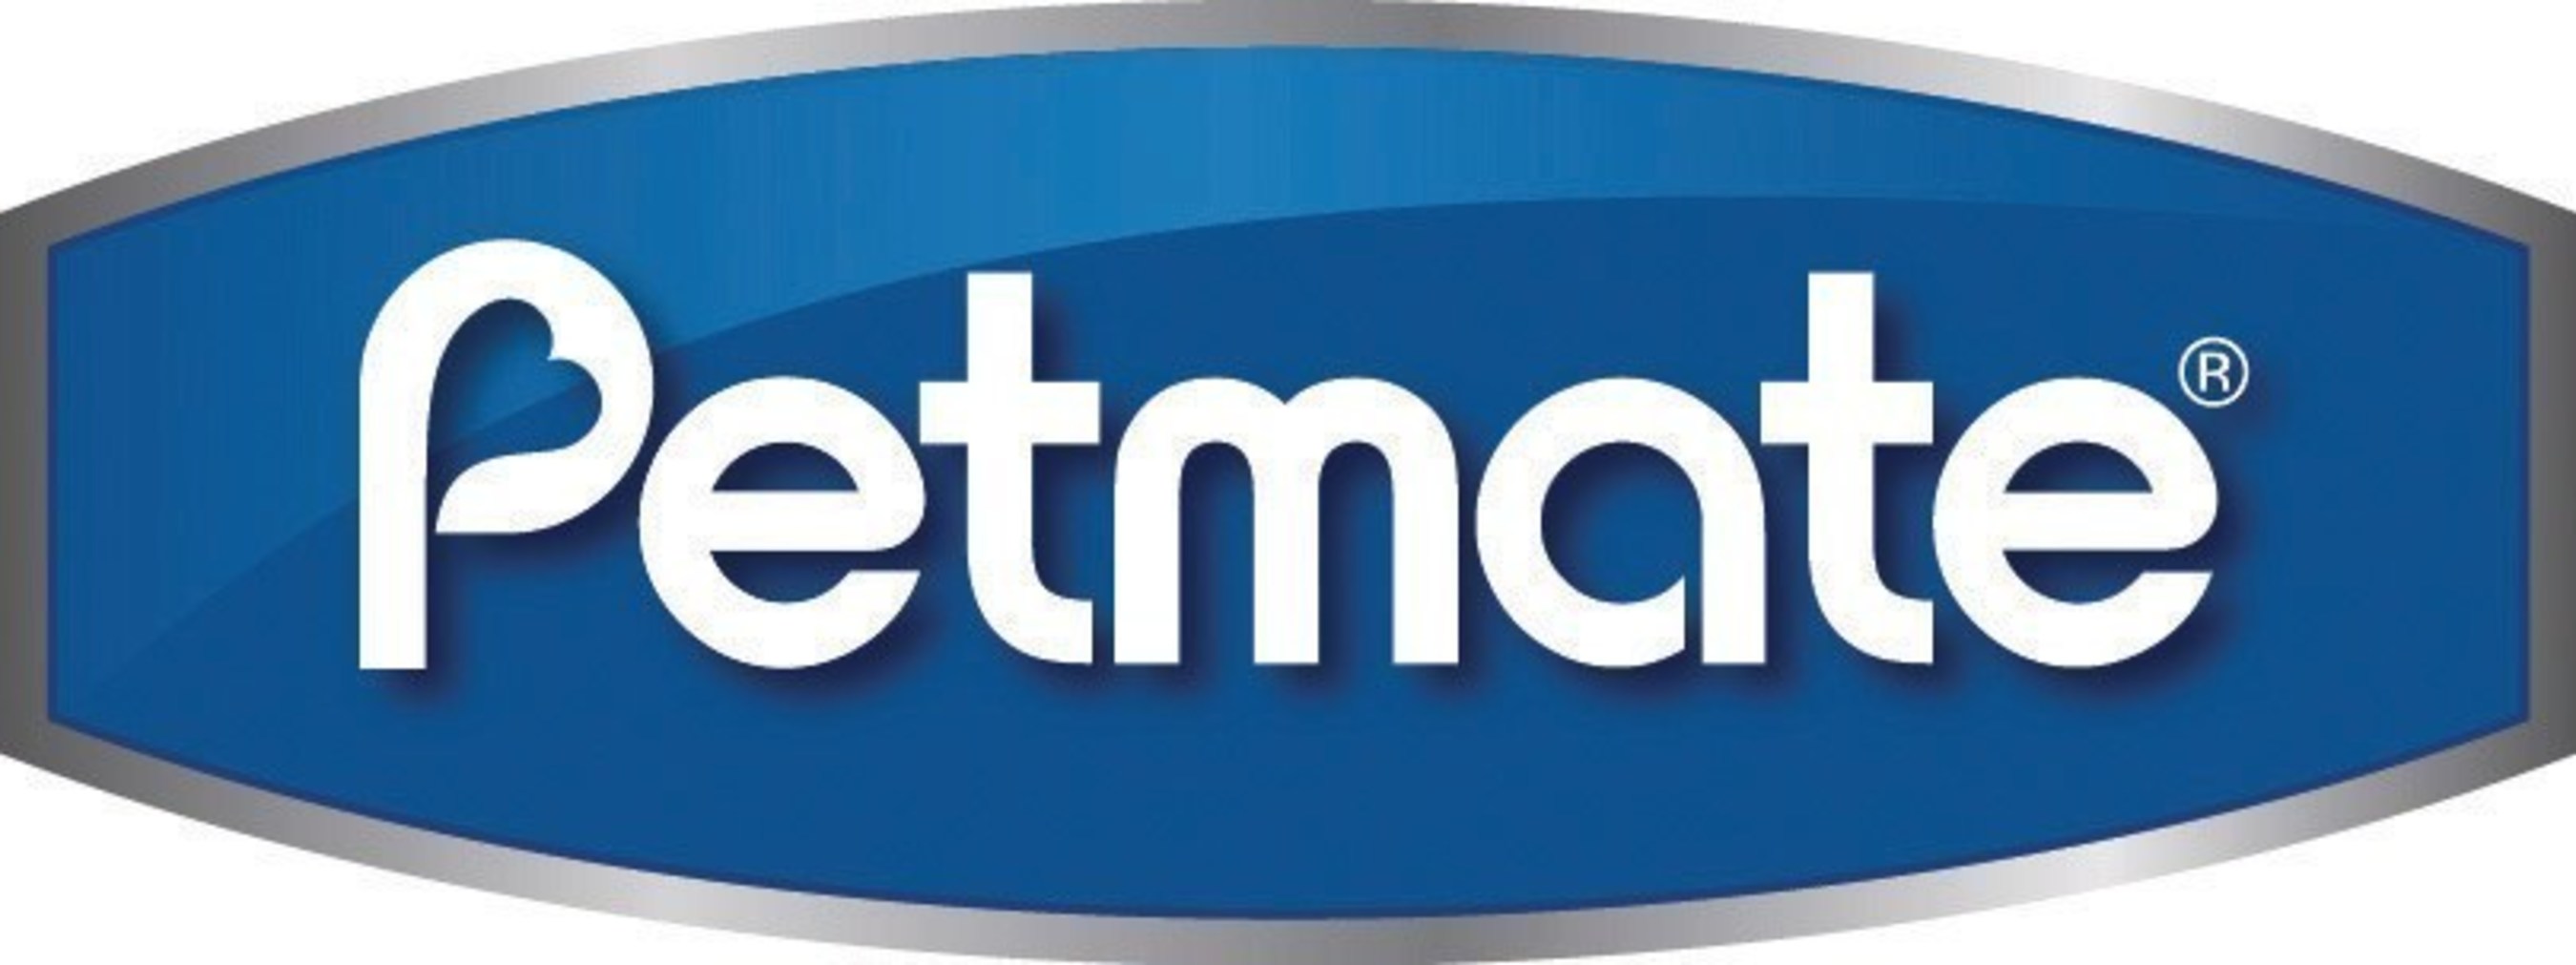 Petmate_Logo